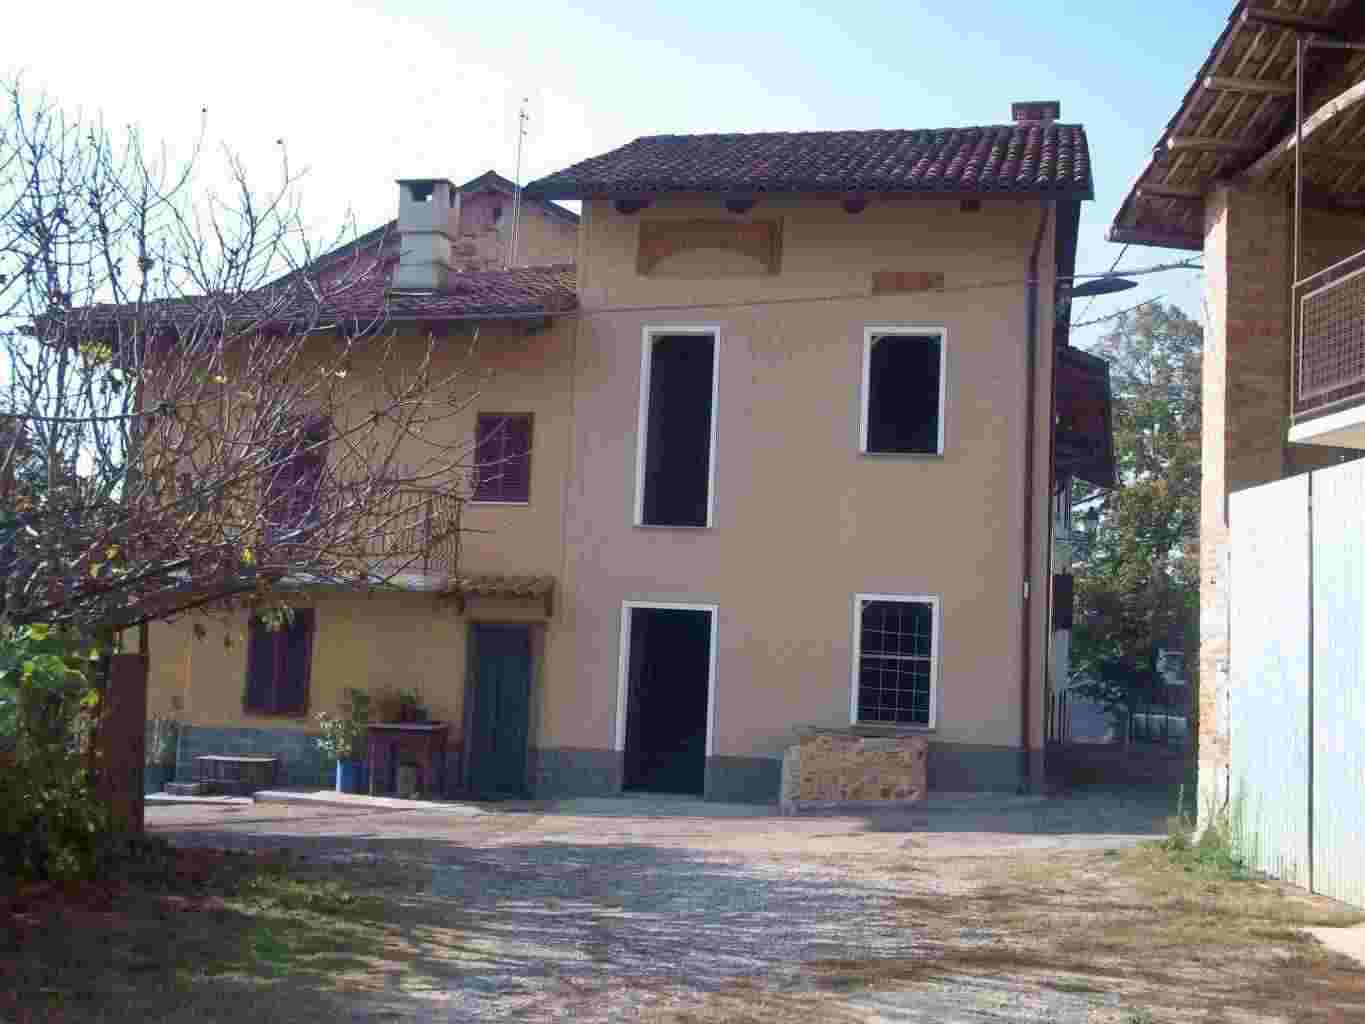 Casa in ristrutturazione centro paese Vicinaze Colle Don Bosco (AT)